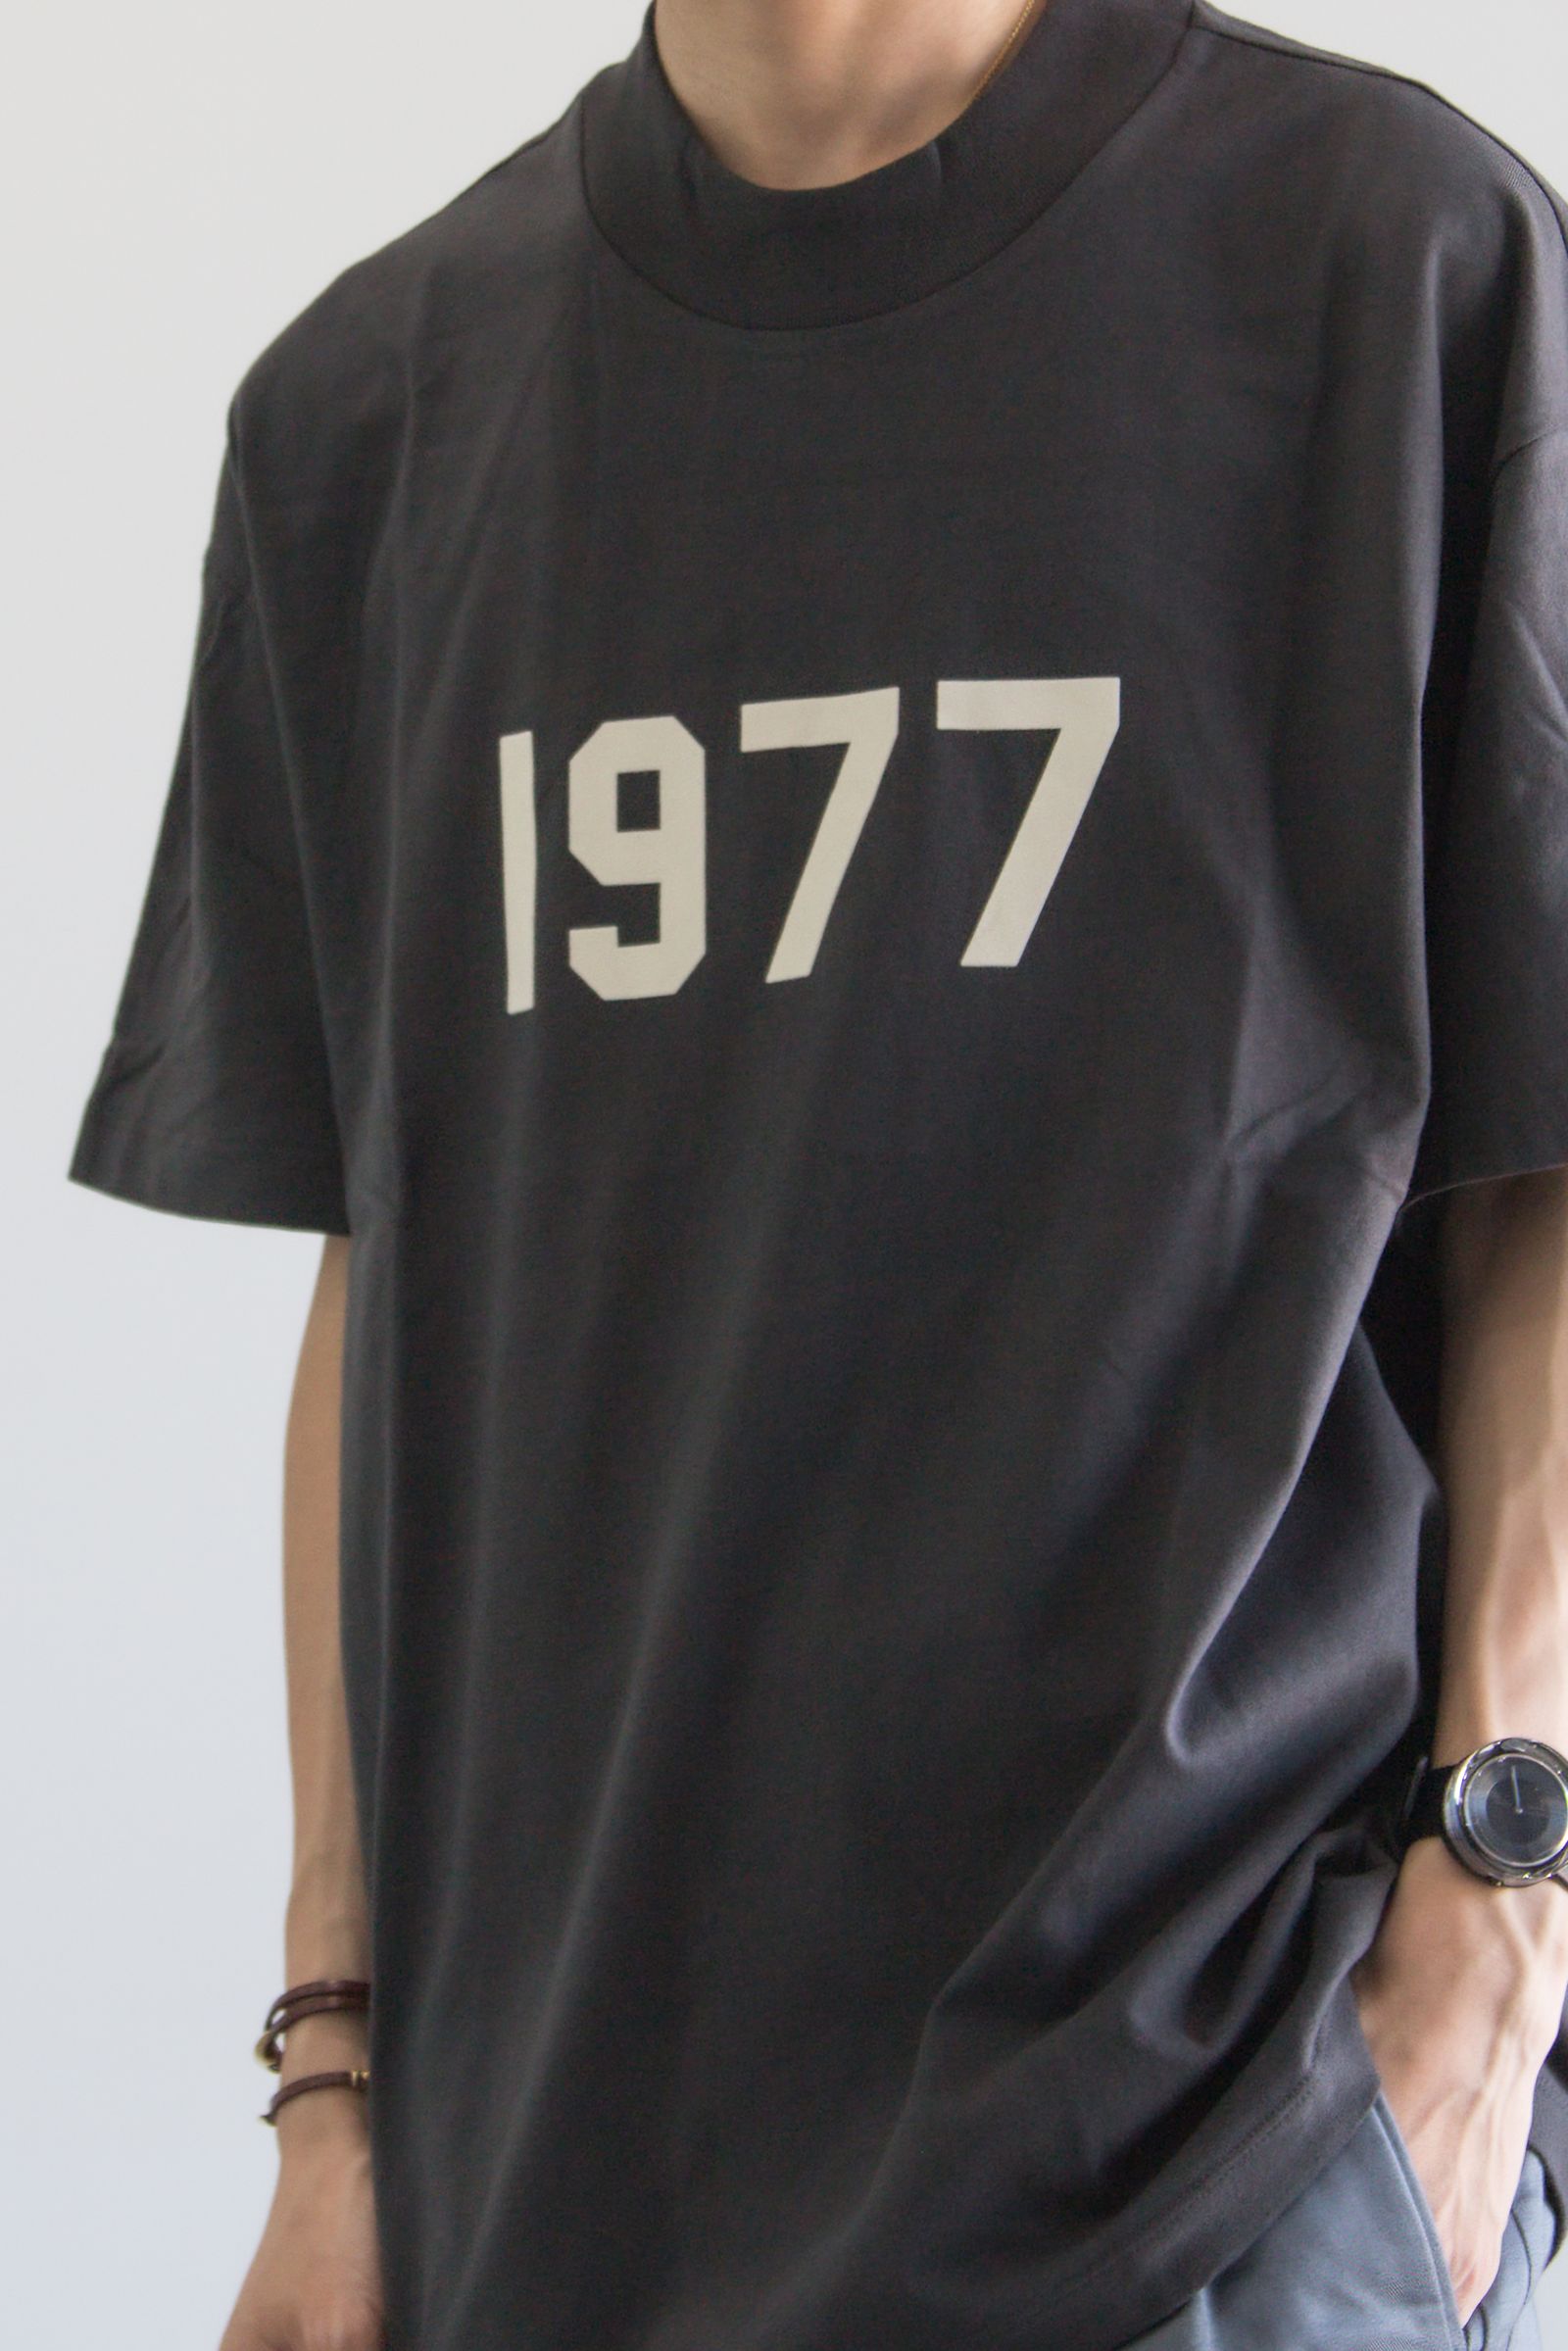 新品 FOG ESSENTIALS Tシャツ 1977 IRON アイアン S